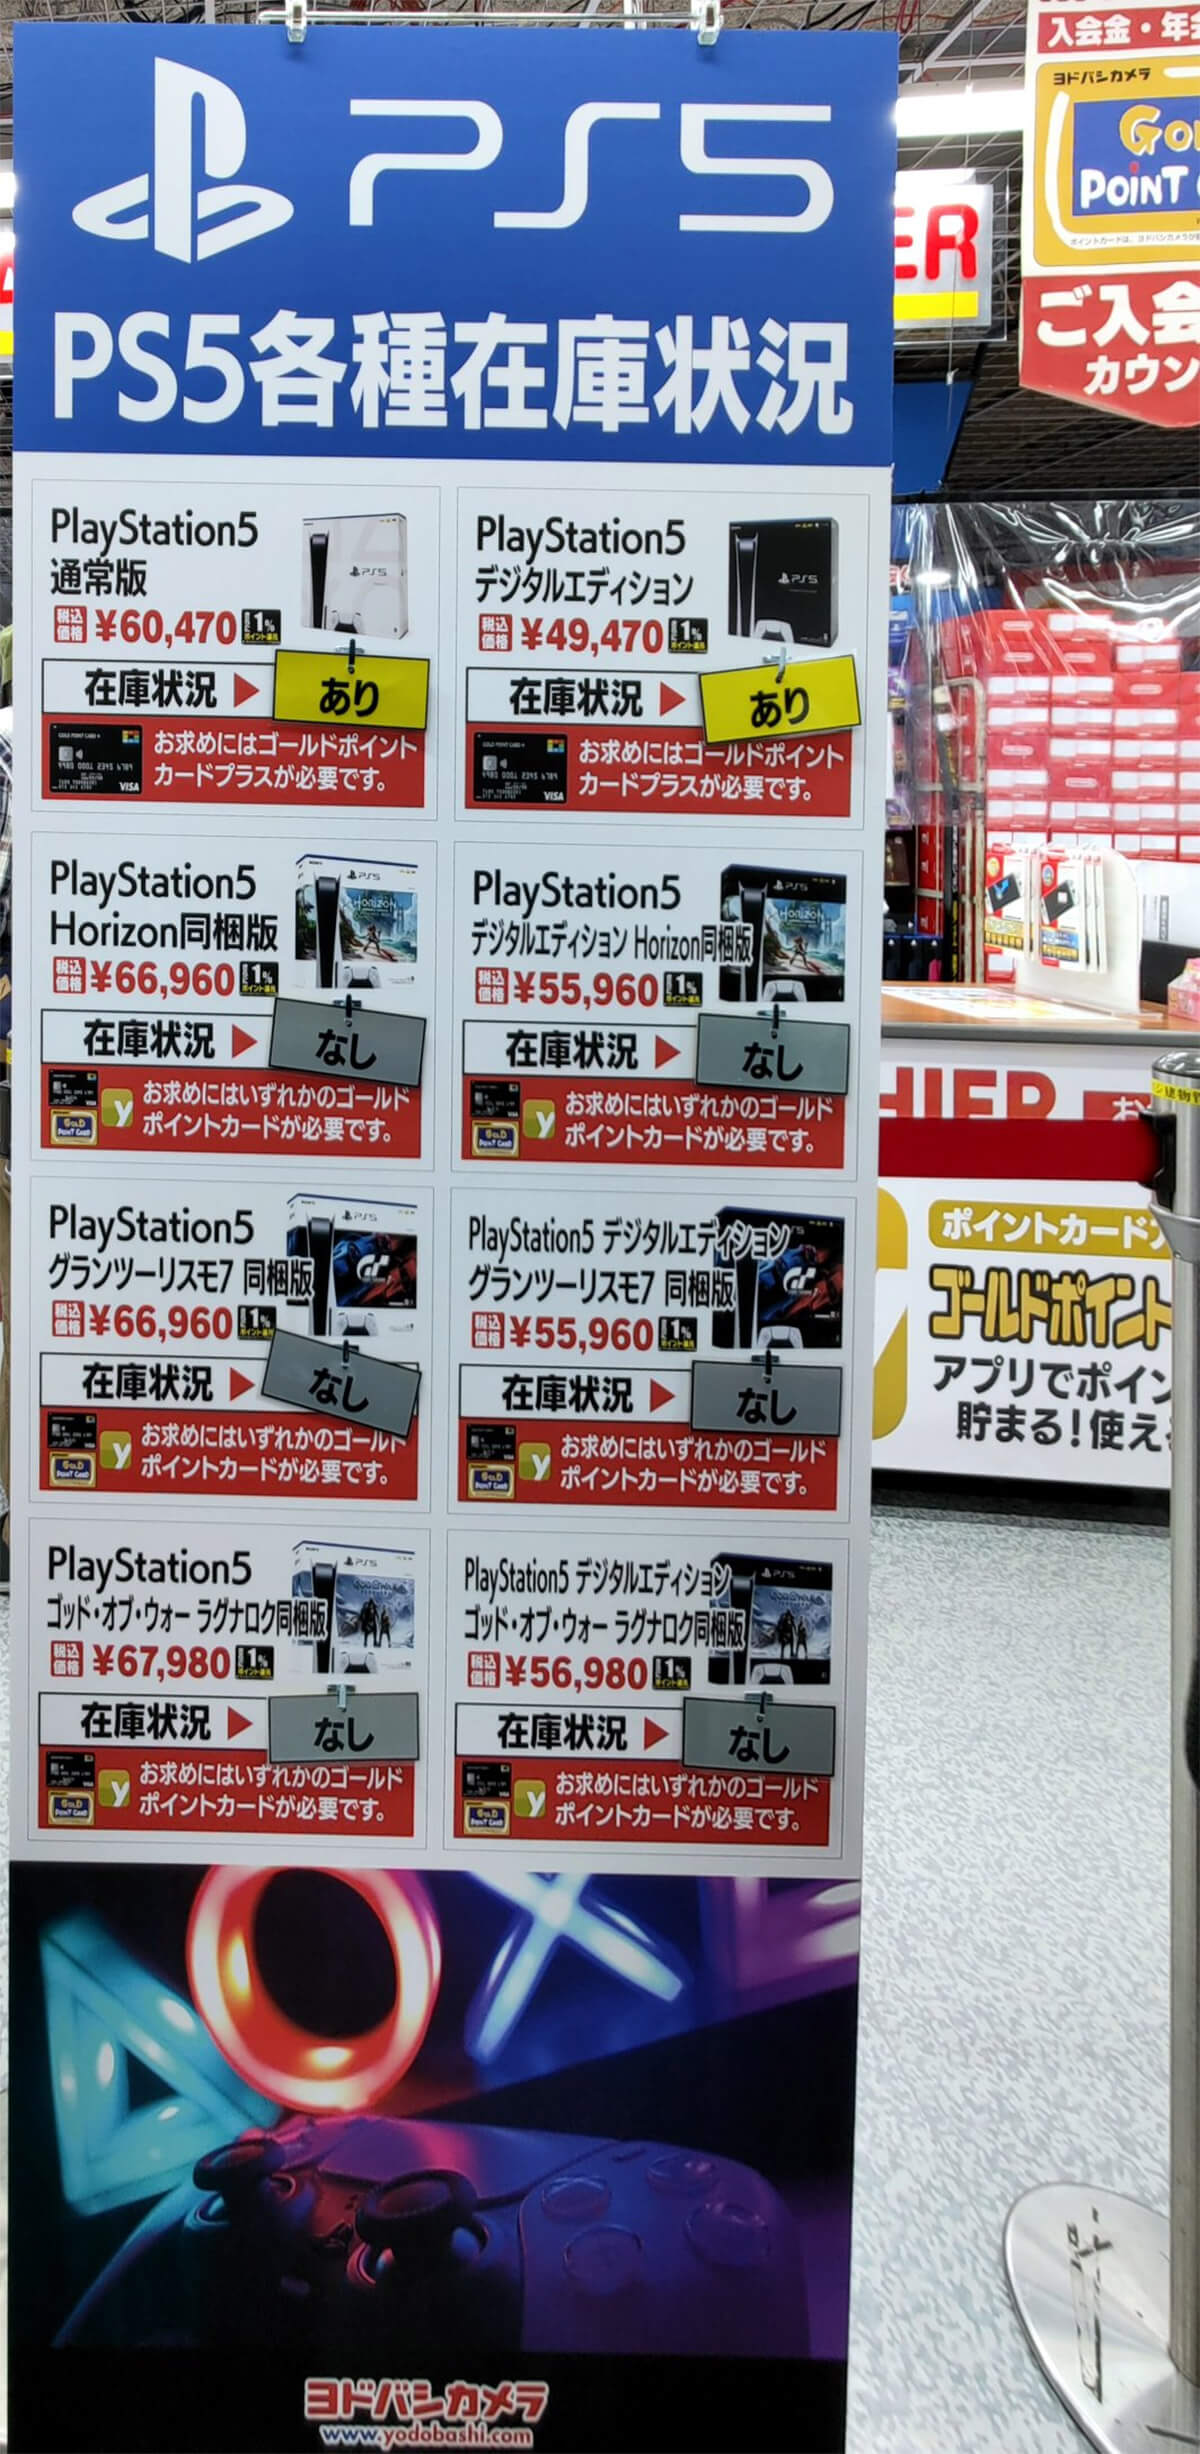 PS5の各種在庫状況